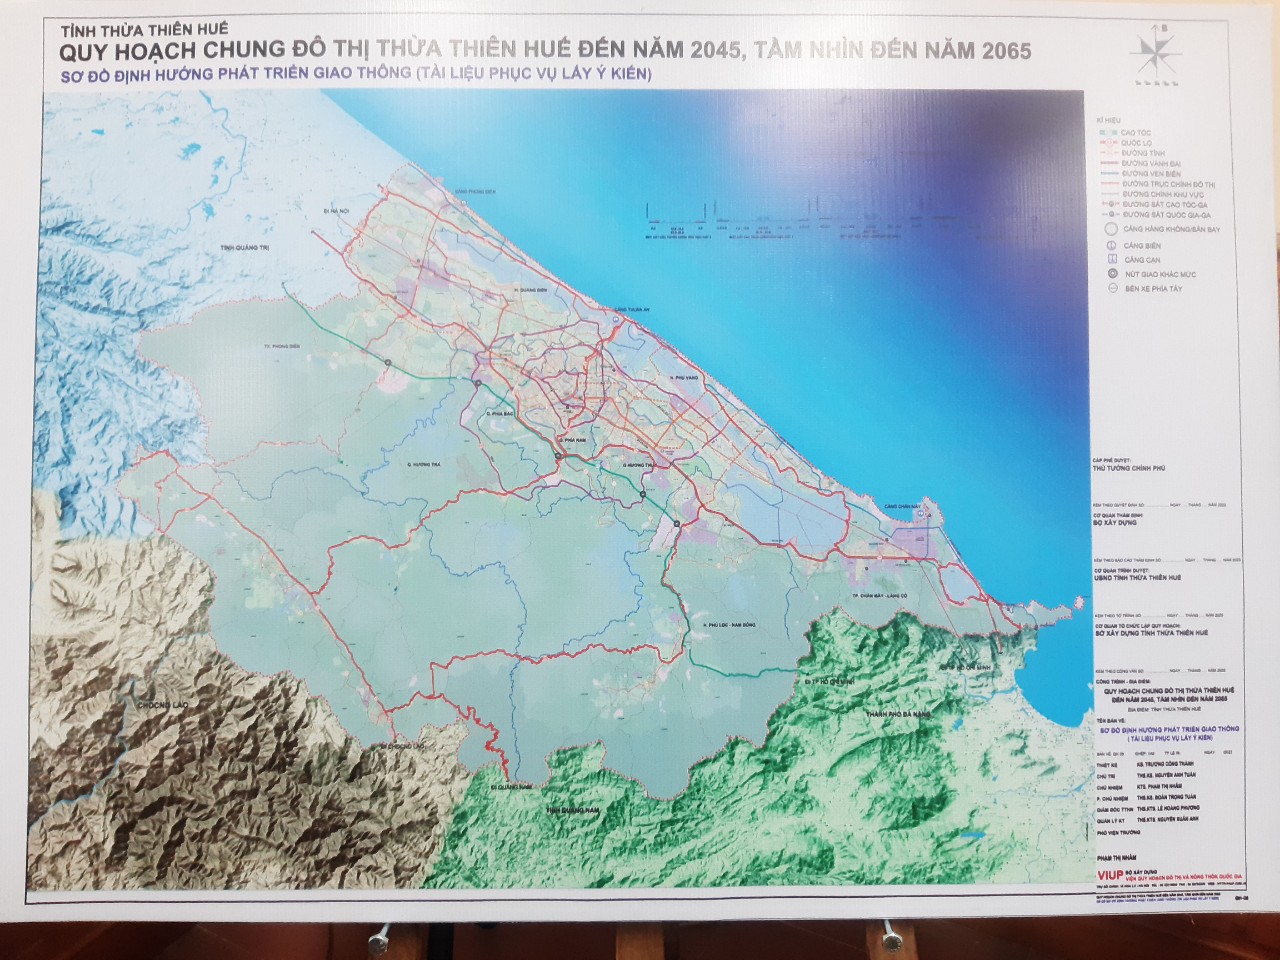 Bản đồ quy hoạch chung đô thị Thừa Thiên- Huế đến năm 2045, tầm nhìn đến năm 2065.